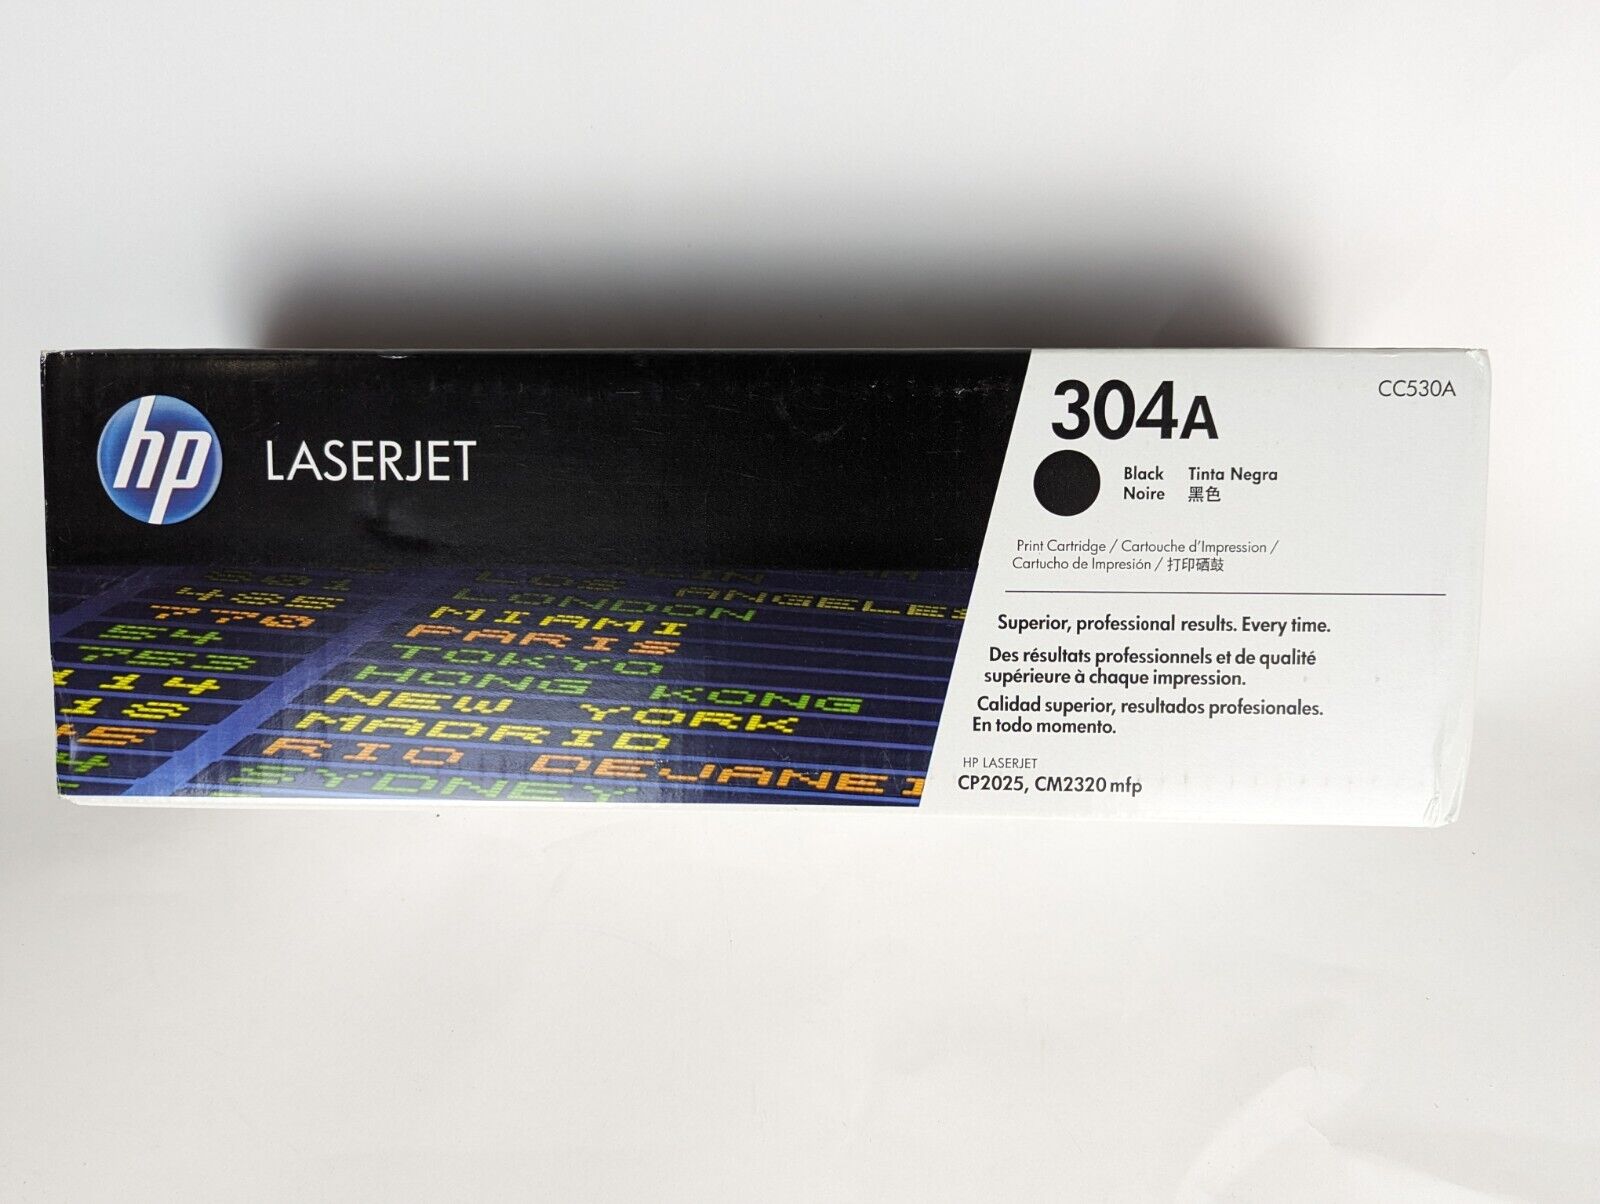 HP 304A Original LaserJet Toner Cartridge - Black (CC530A) 0005720#1